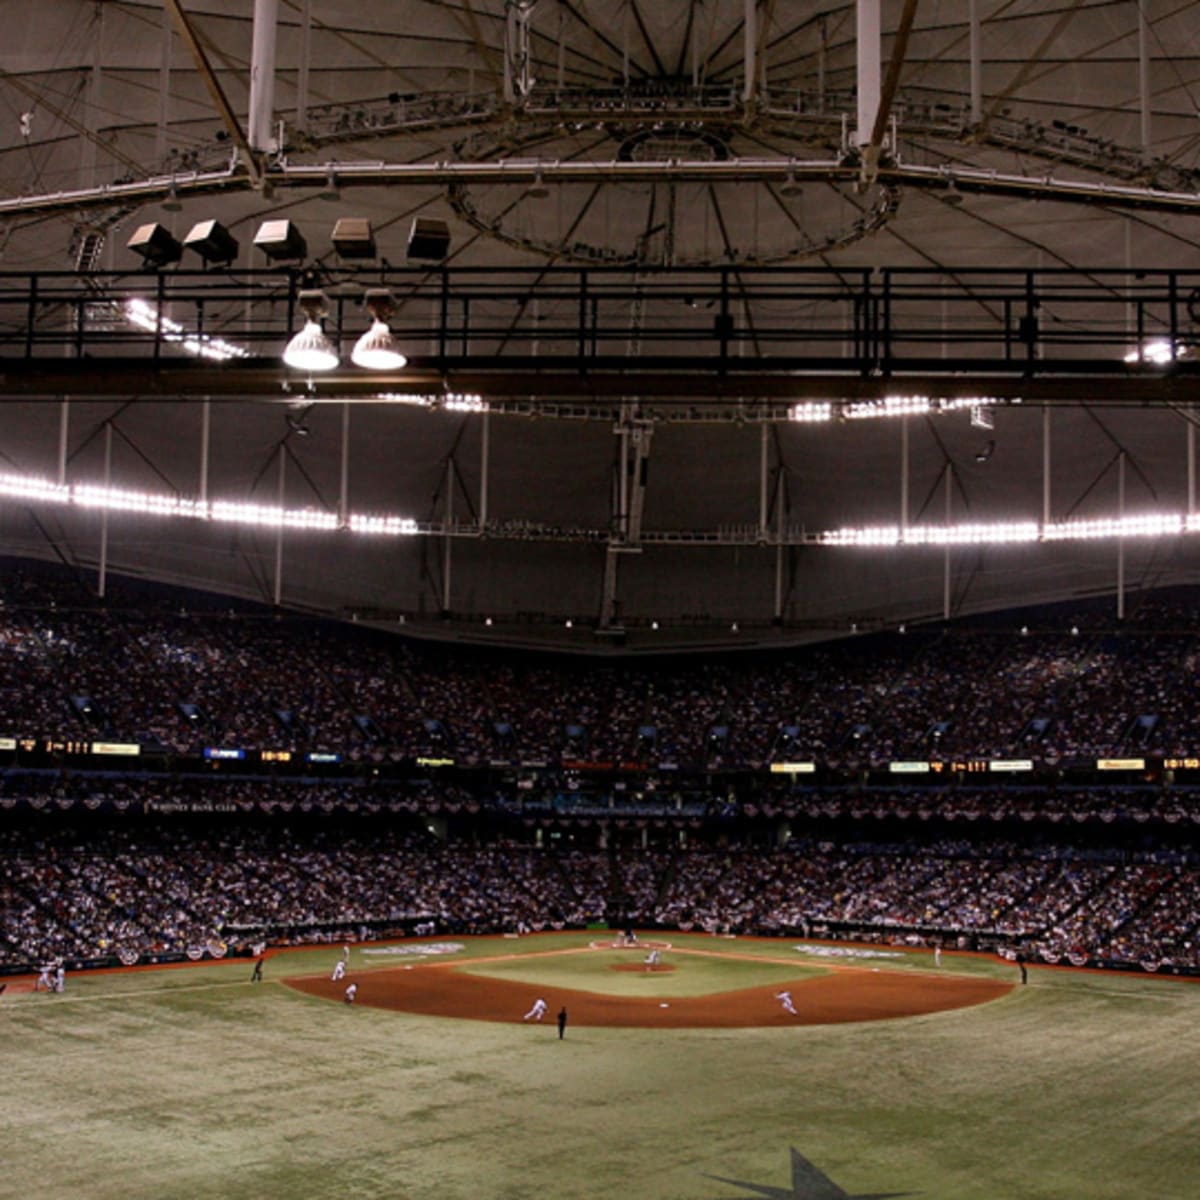 Tampa Bay Rays stadium: St. Petersburg mayor Rick Kriseman will